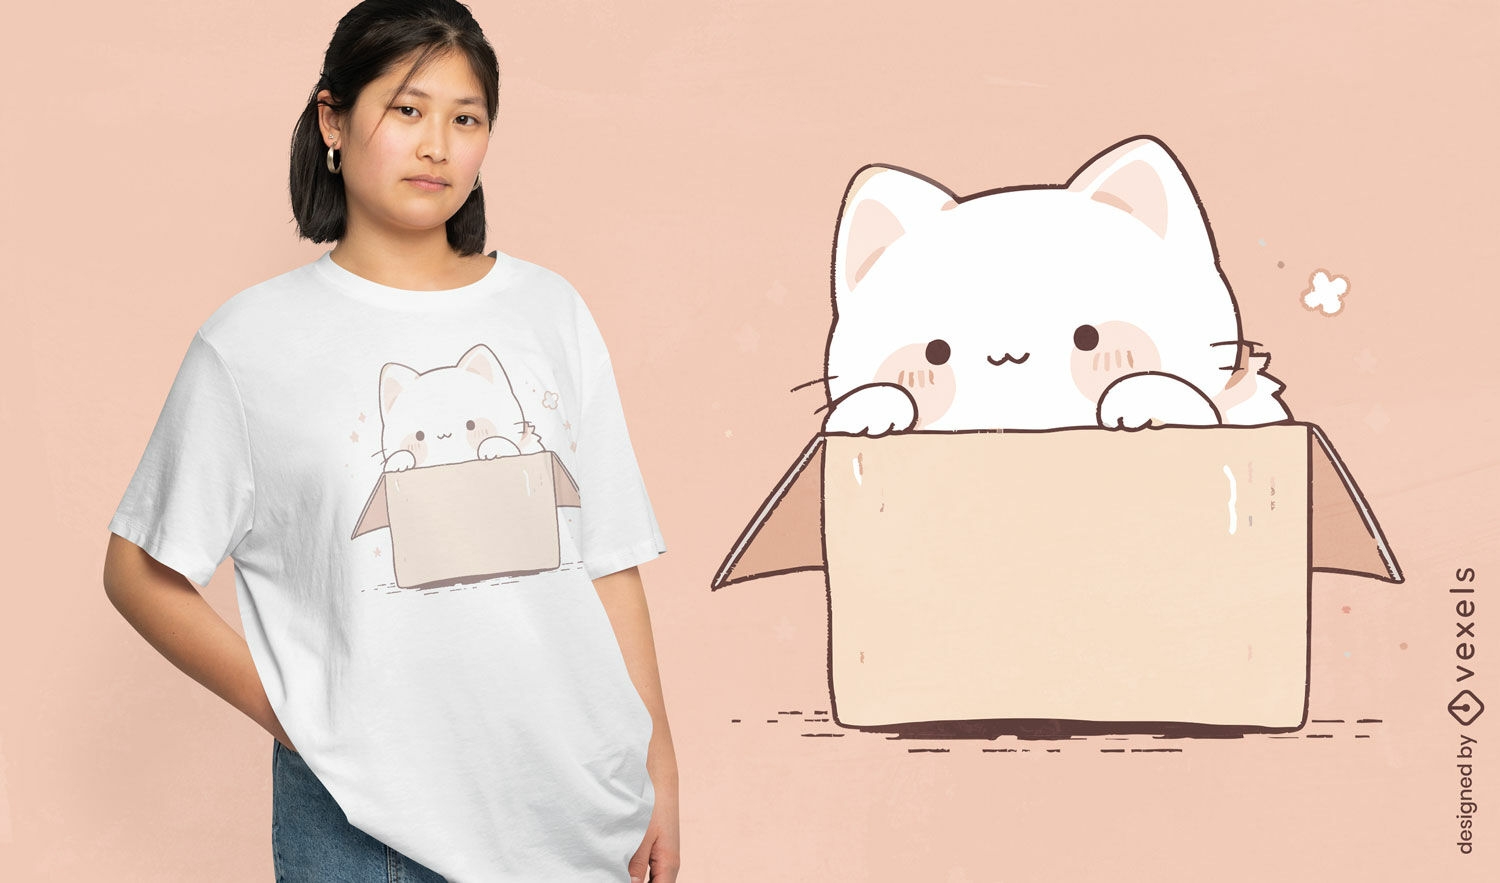 Lindo dise?o de camiseta de gato en una caja.